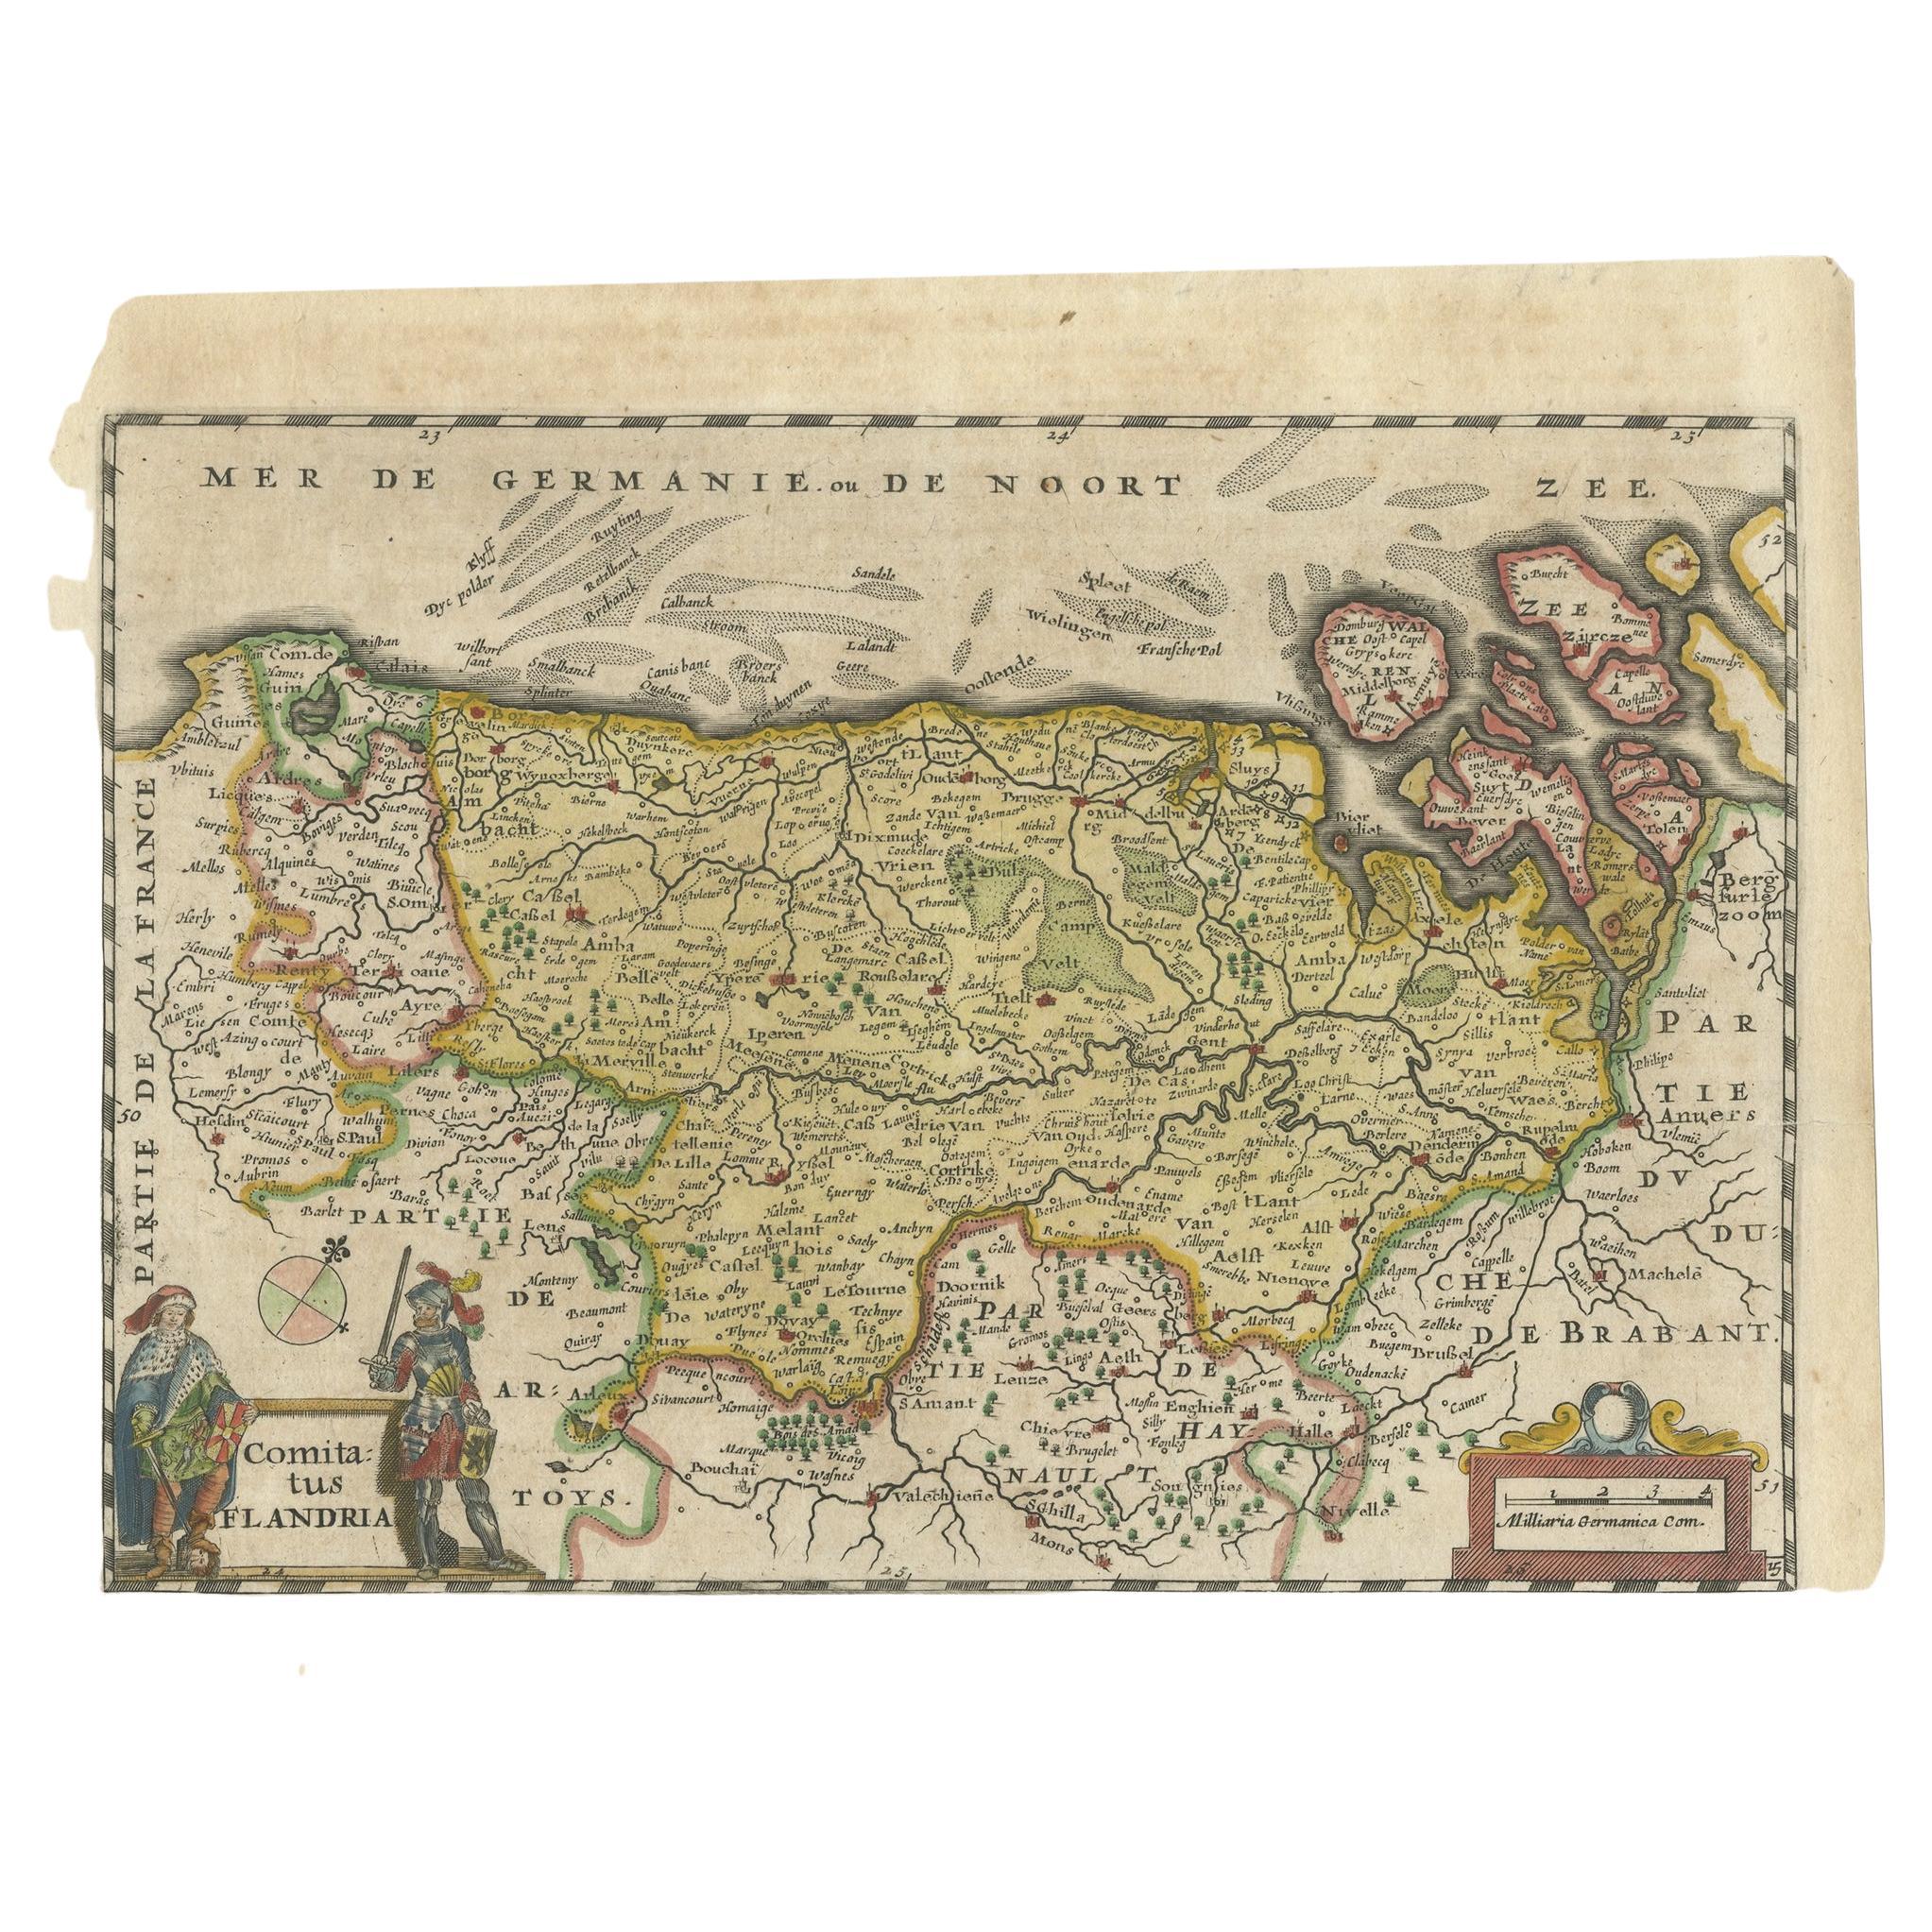 Antike Karte mit dem Titel 'Comitatus Flandria'. Original antike Karte von Flandern, Belgien. Diese Karte stammt aus 